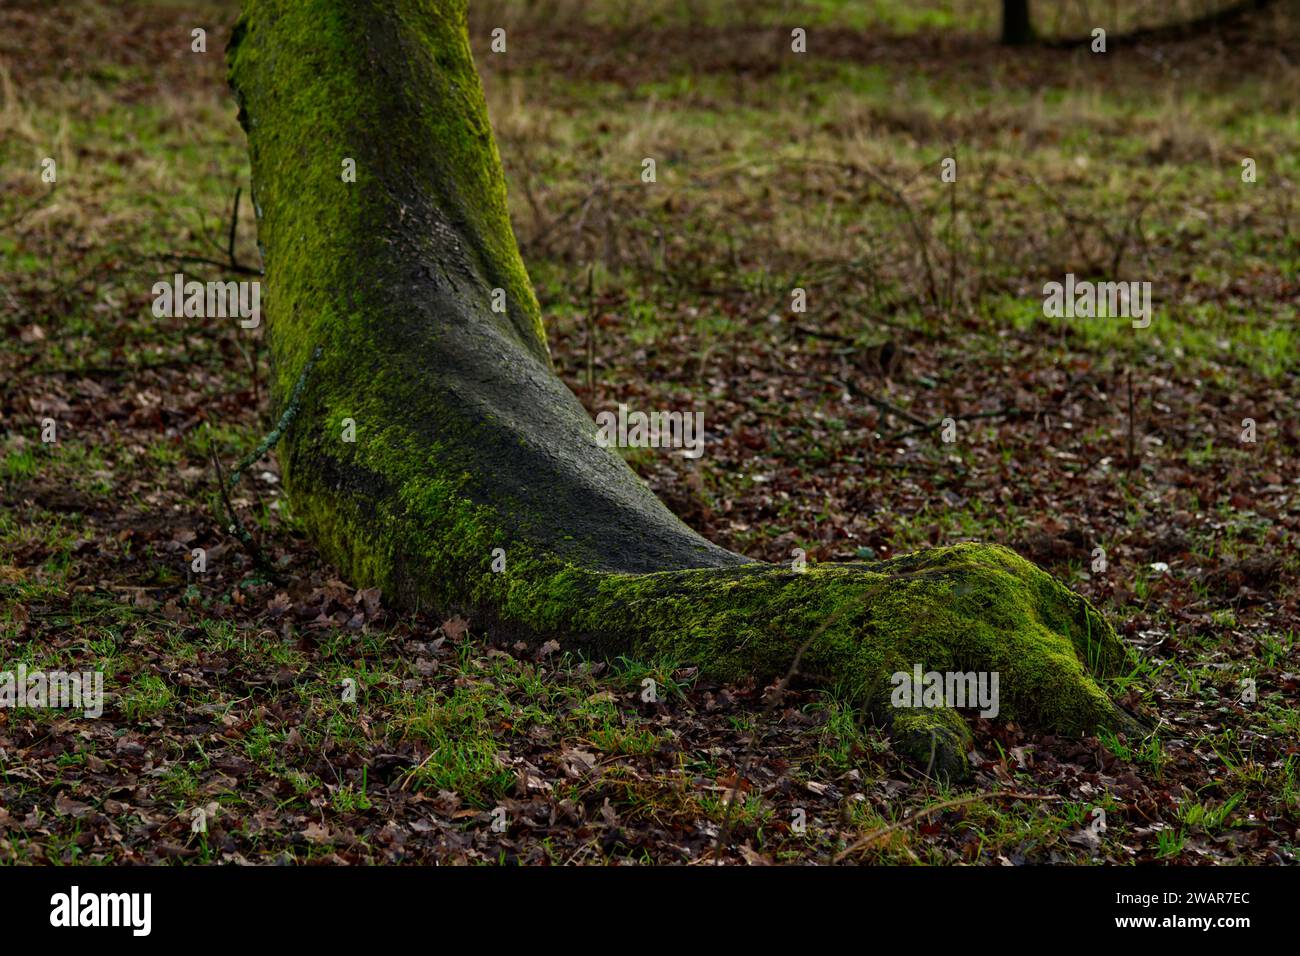 gros plan du pied d'un arbre qui ressemble à l'imitation d'un pied ou d'une patte d'un animal Banque D'Images